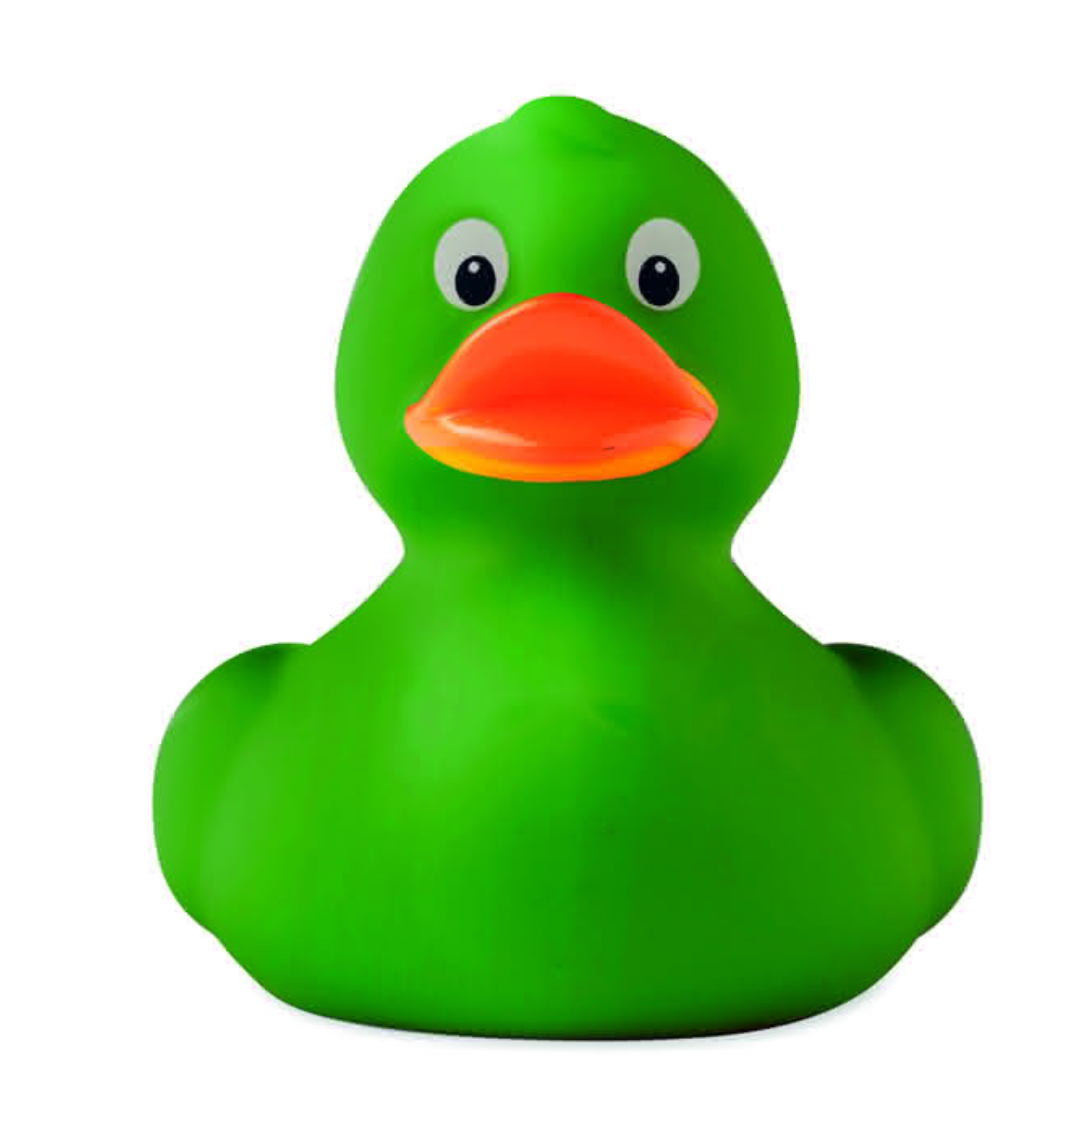 Duck original verde.